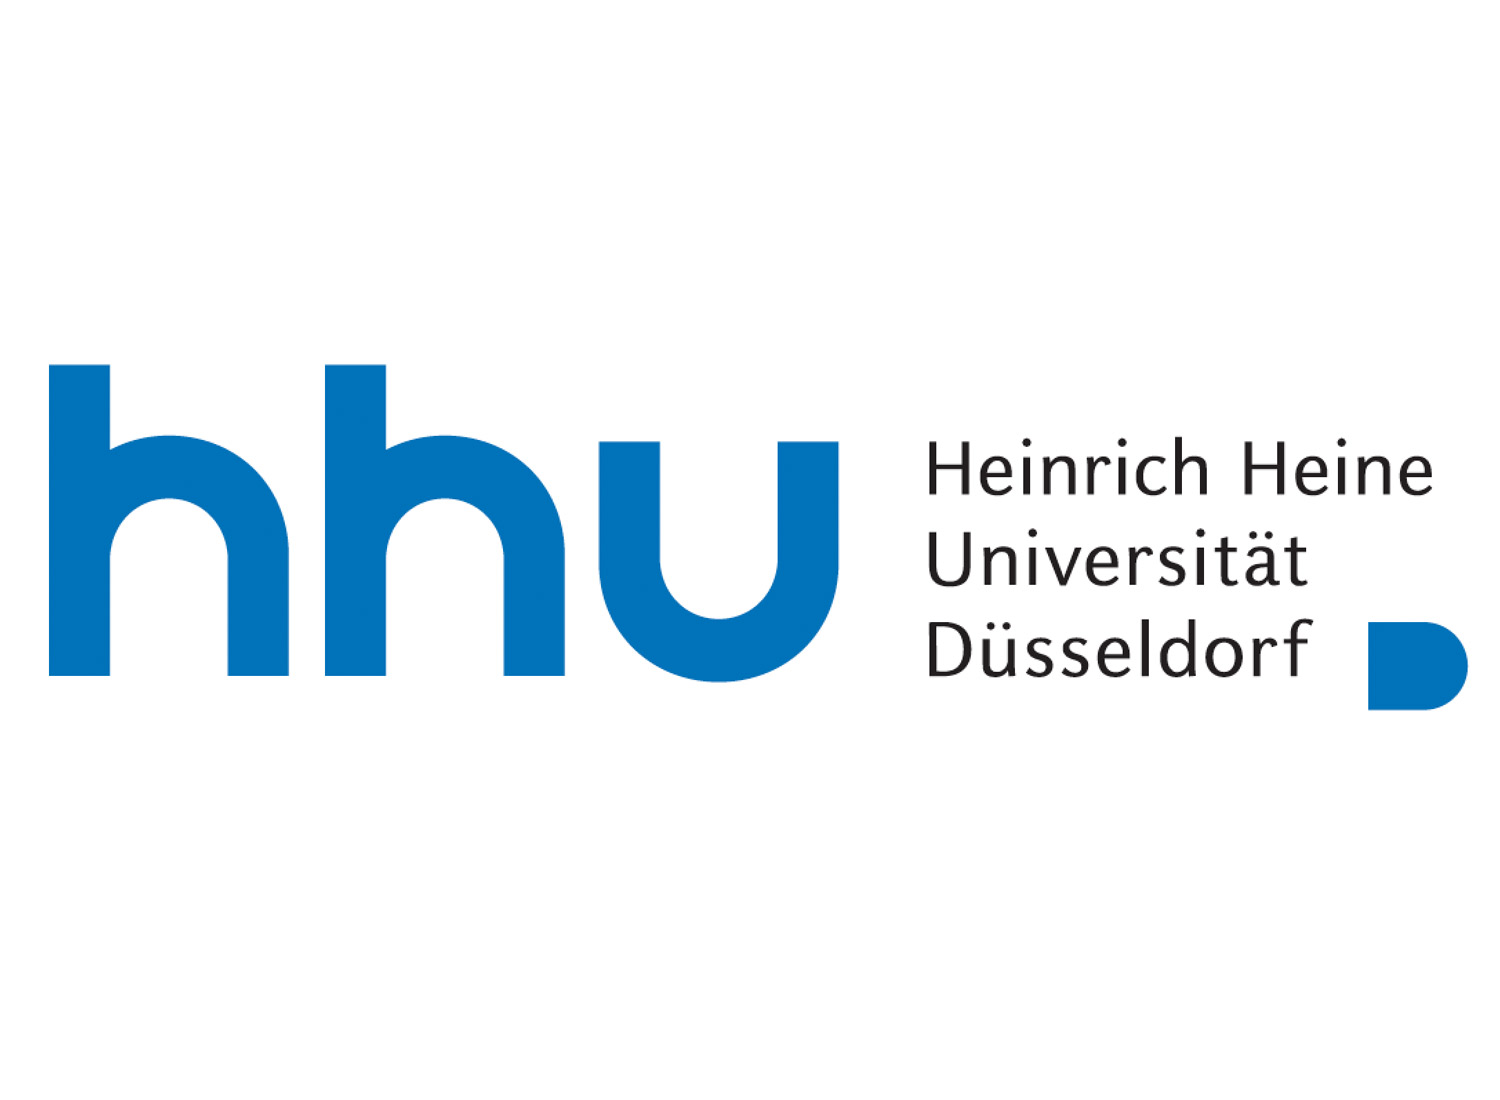 HHU Logo, Quelle: HHU